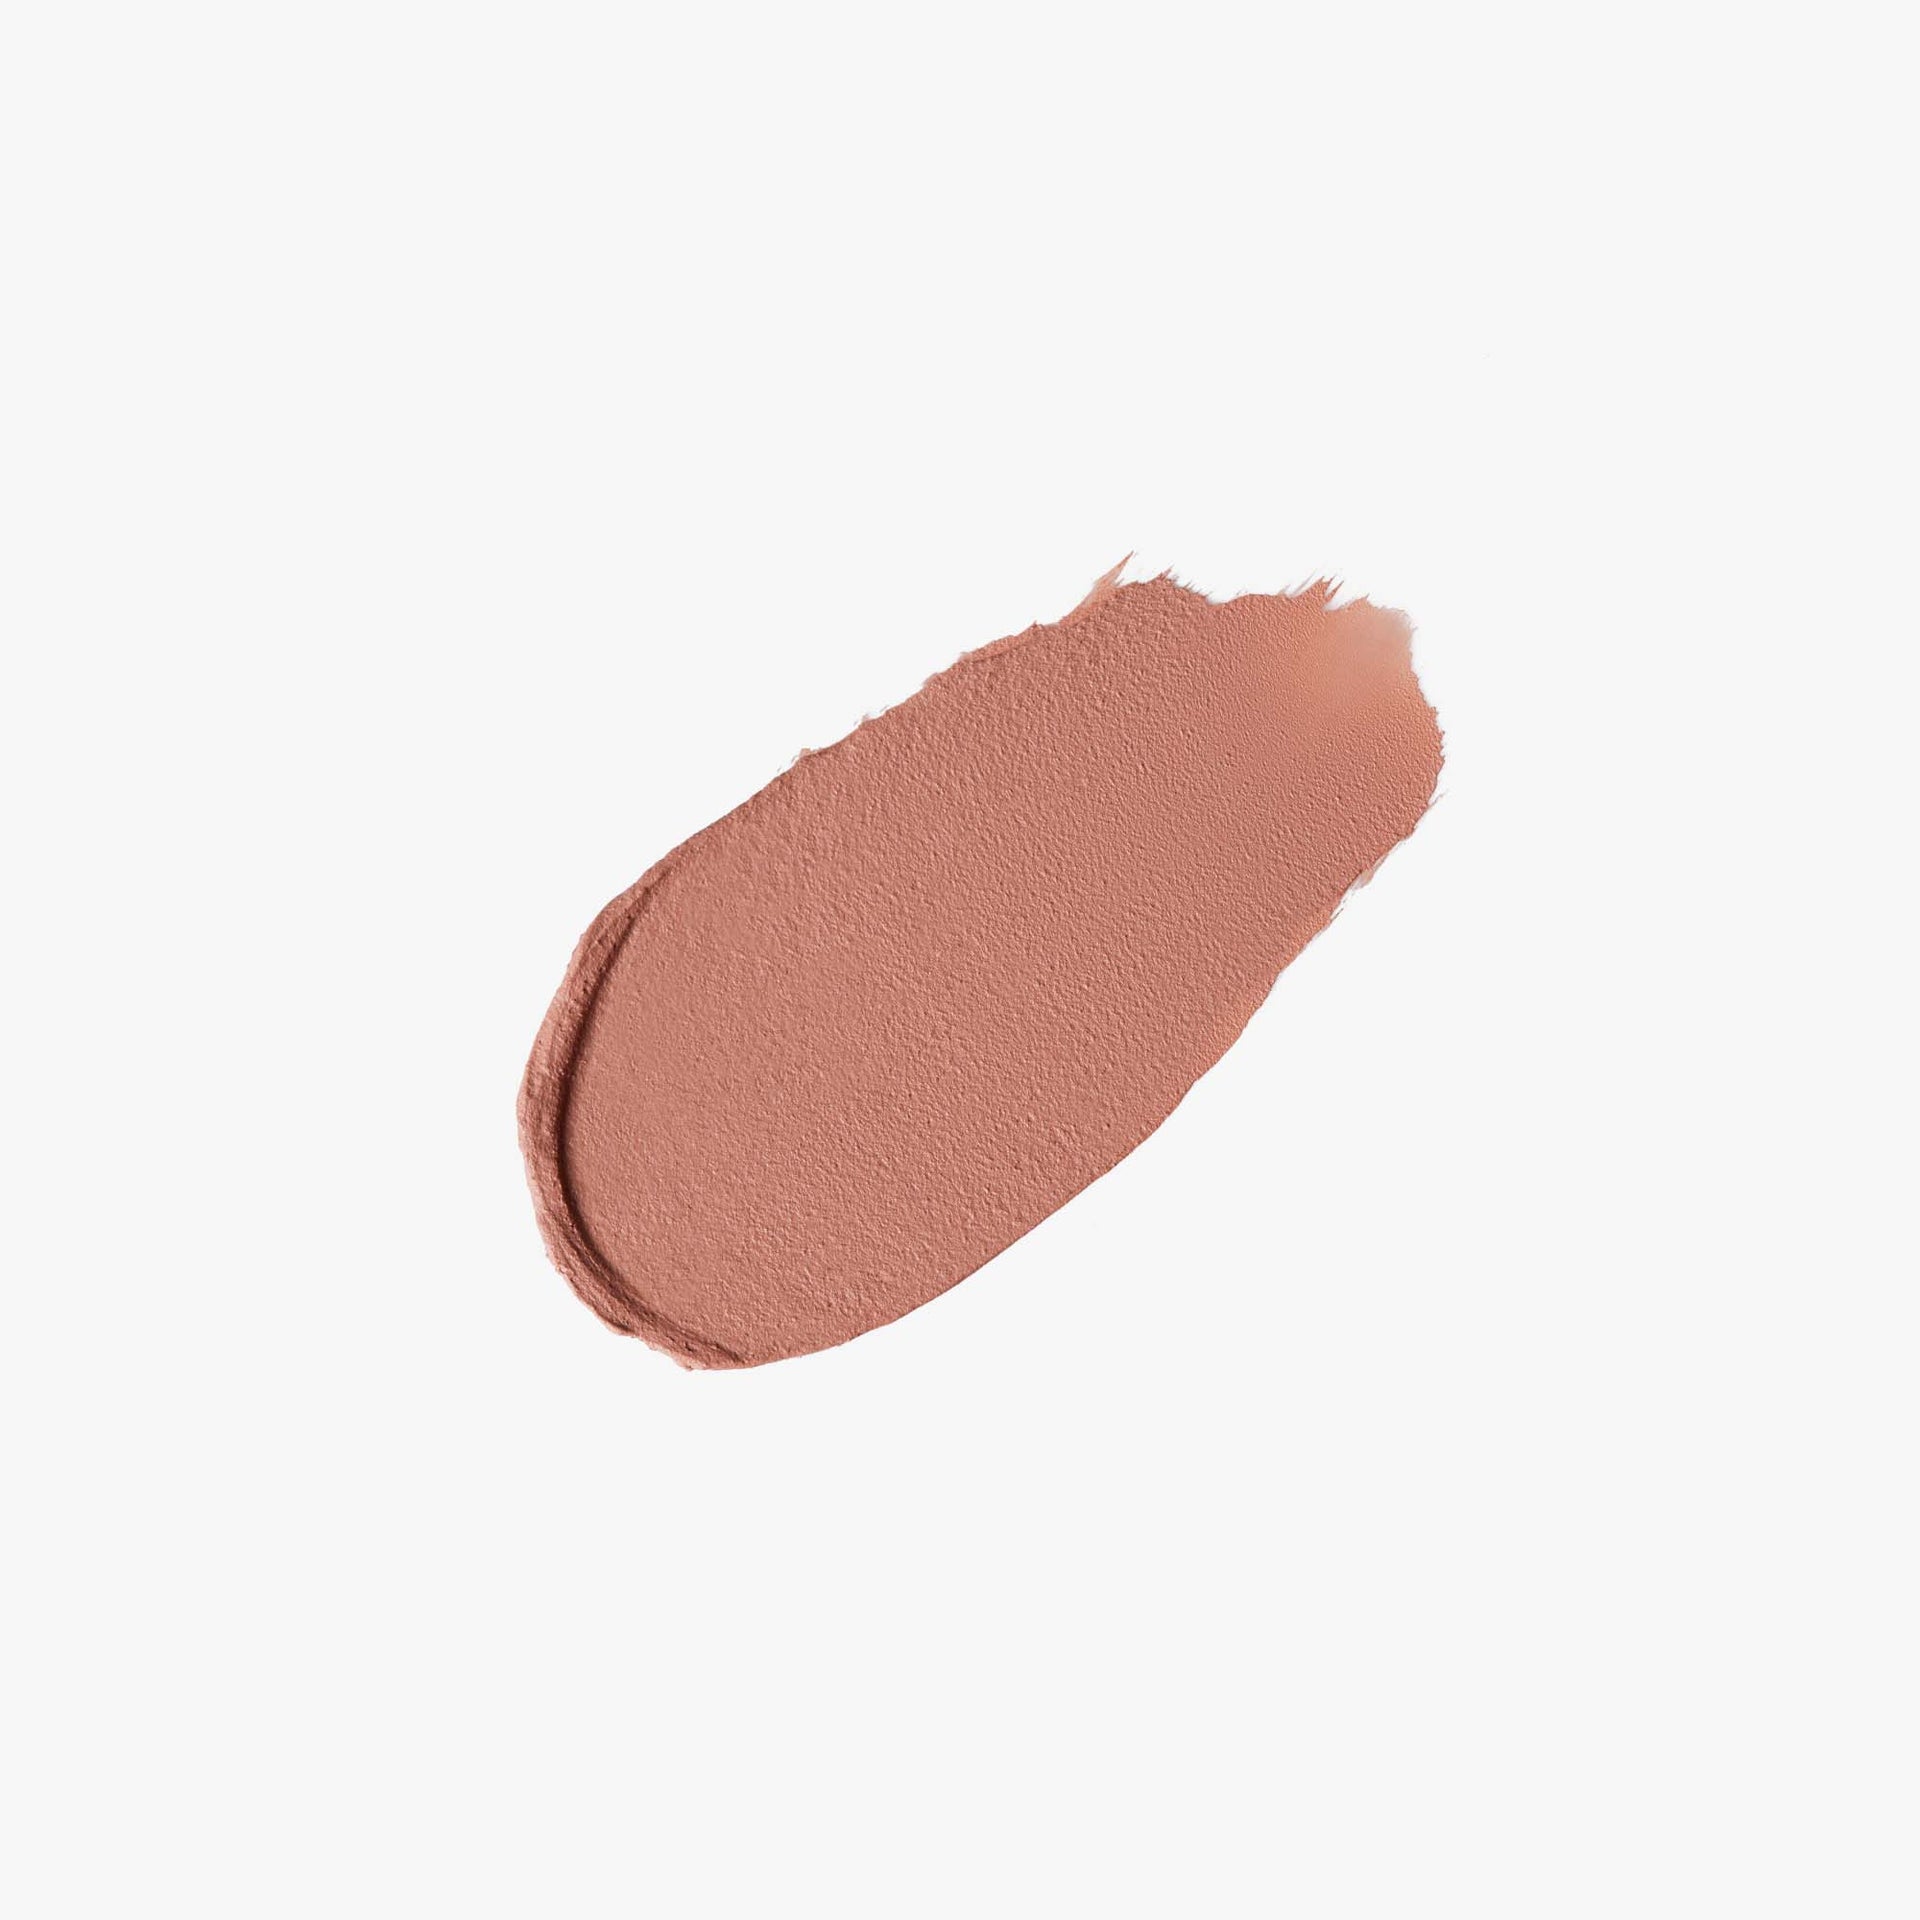 Peachy Nude| Lip velvet swatch - Peachy Nude